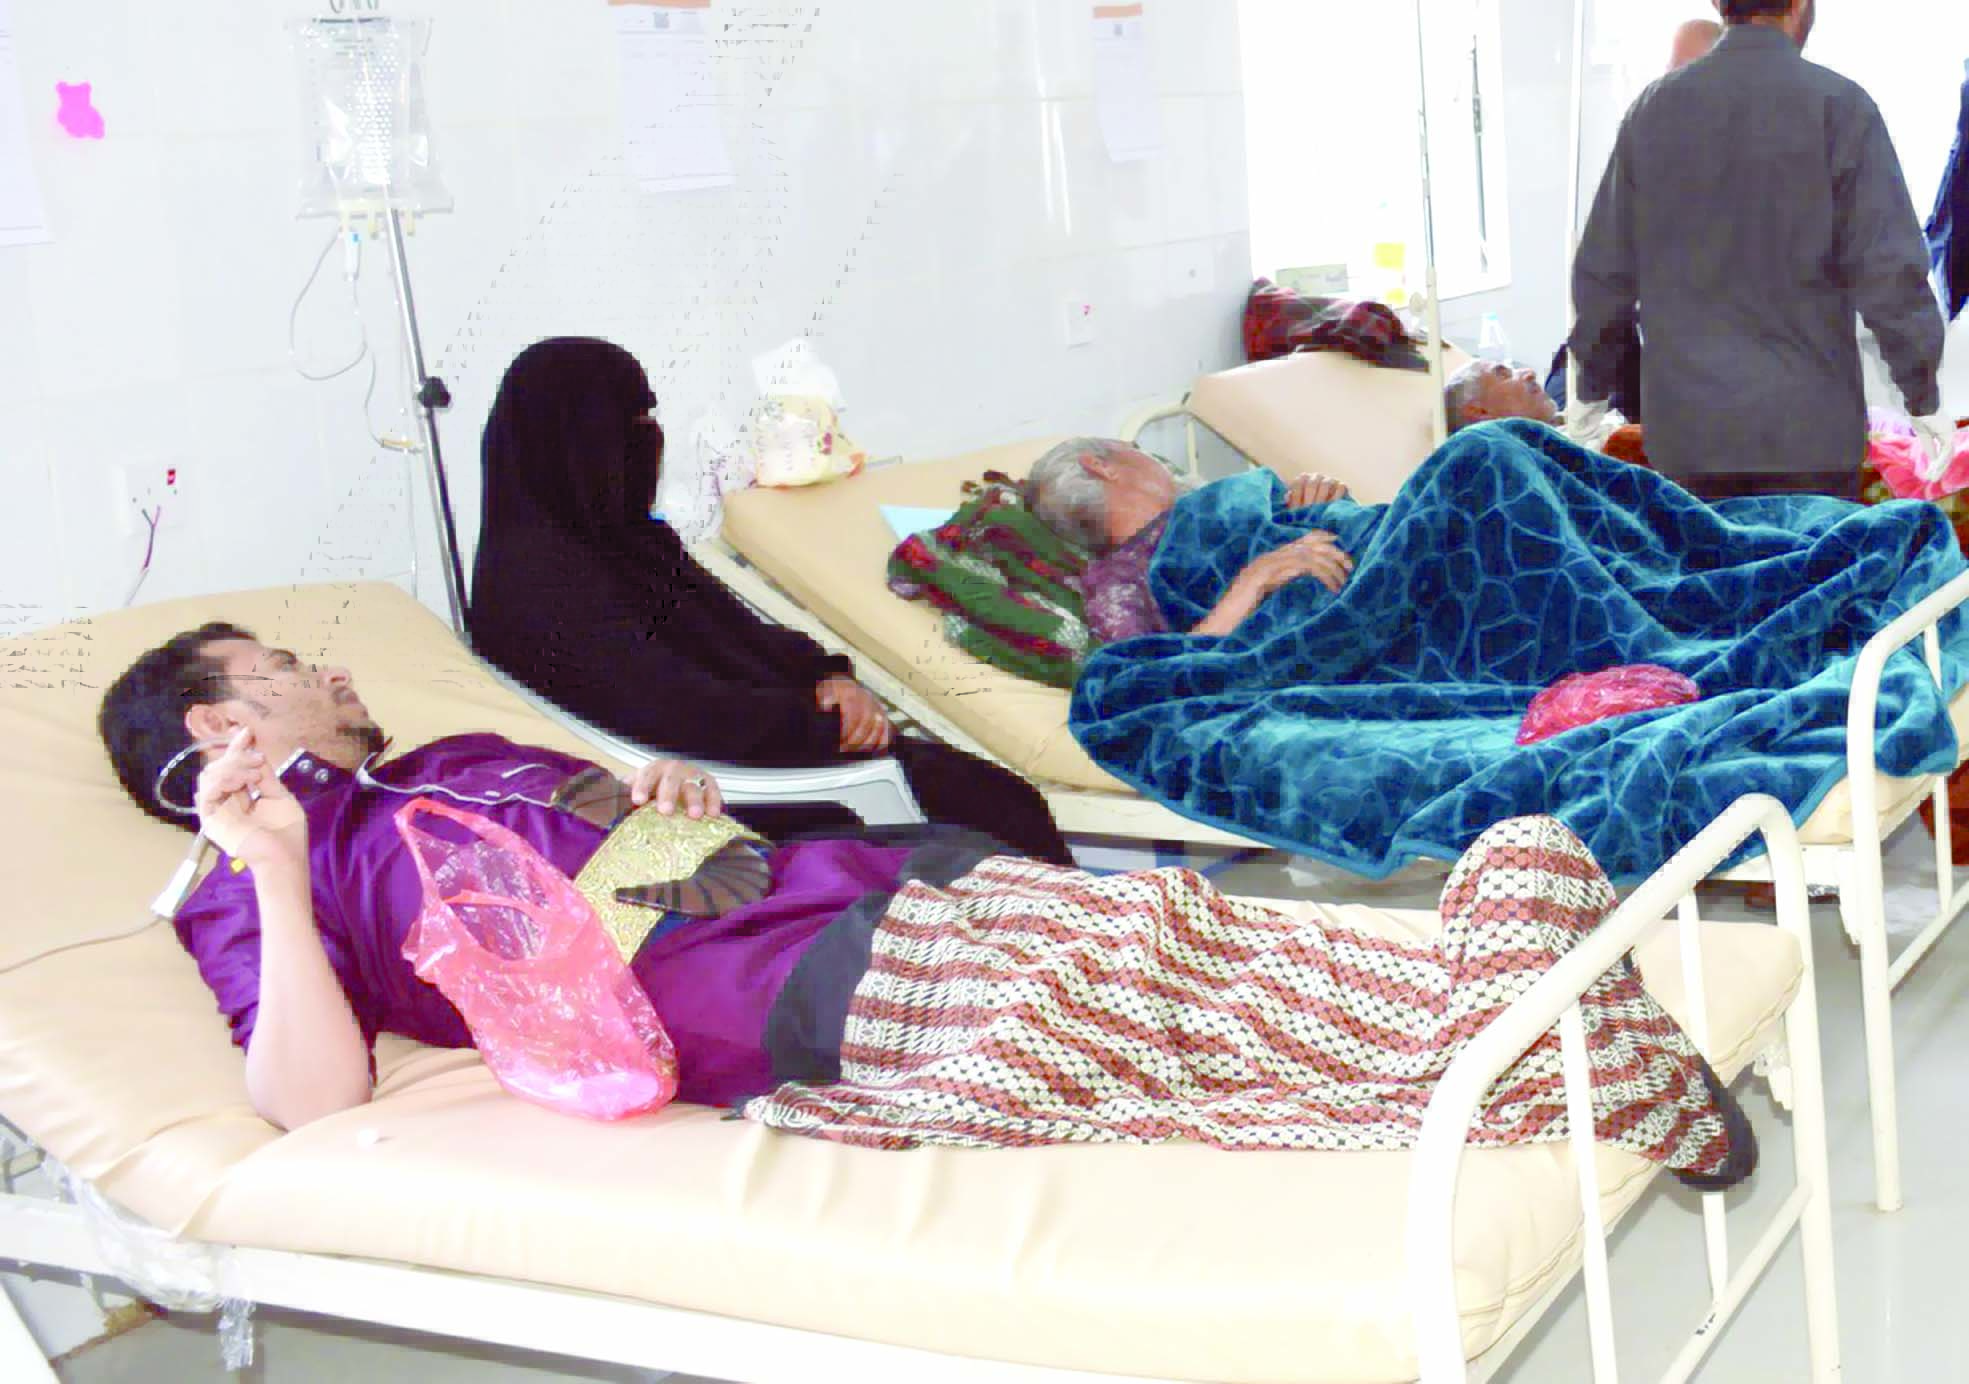 التهاب السحايا والجدري يؤازران الكوليرا في حصد الأرواح 

«الأوبئة» تزيد معاناة اليمنيين